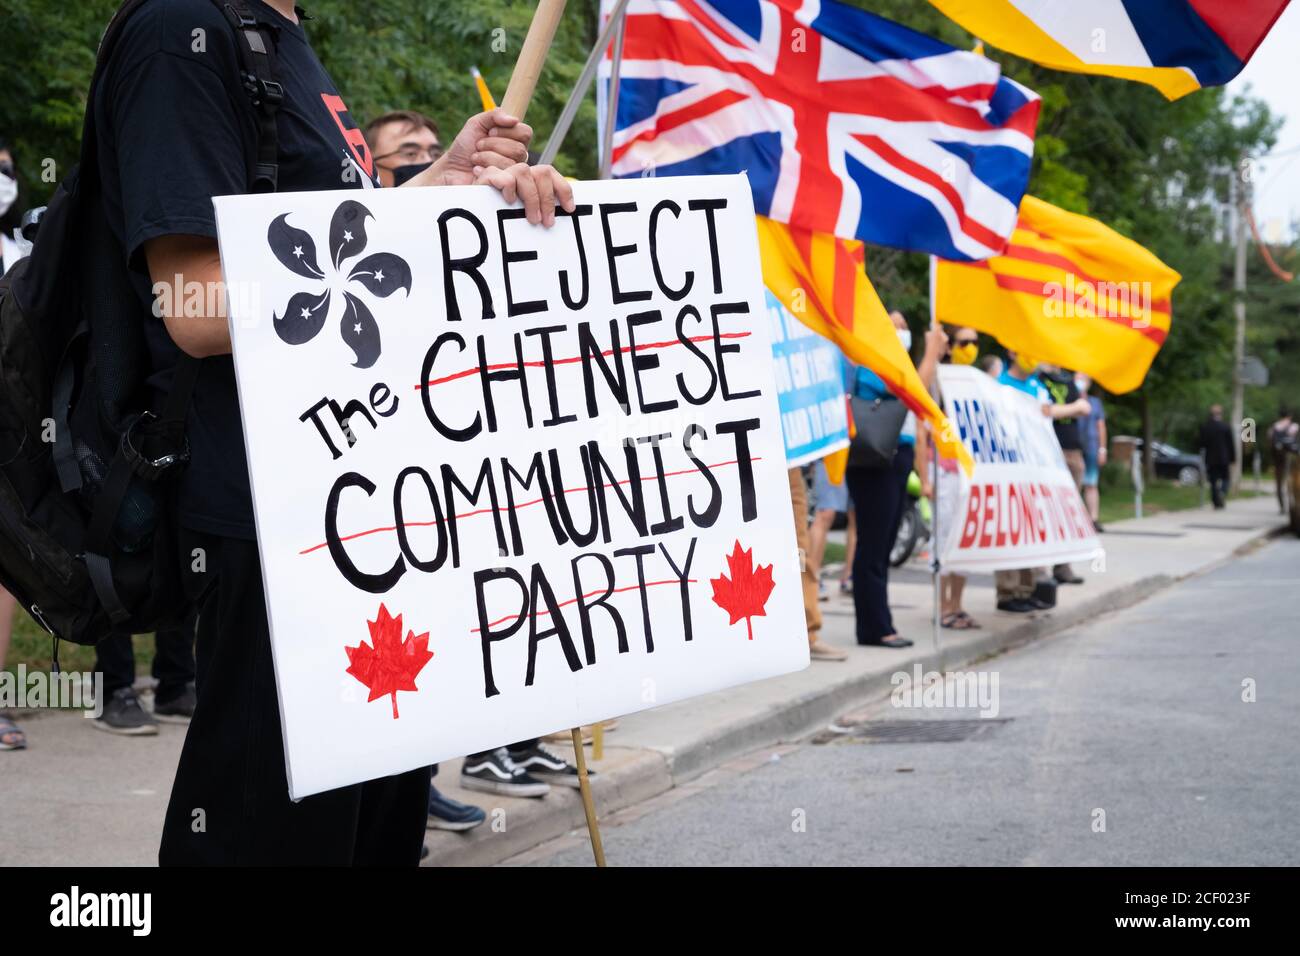 Les manifestants de Hong Kong, du Vietnam et d'autres régions opprimées par le Parti communiste chinois se rassemblent à l'extérieur du consulat chinois à Toronto, en Ontario Banque D'Images